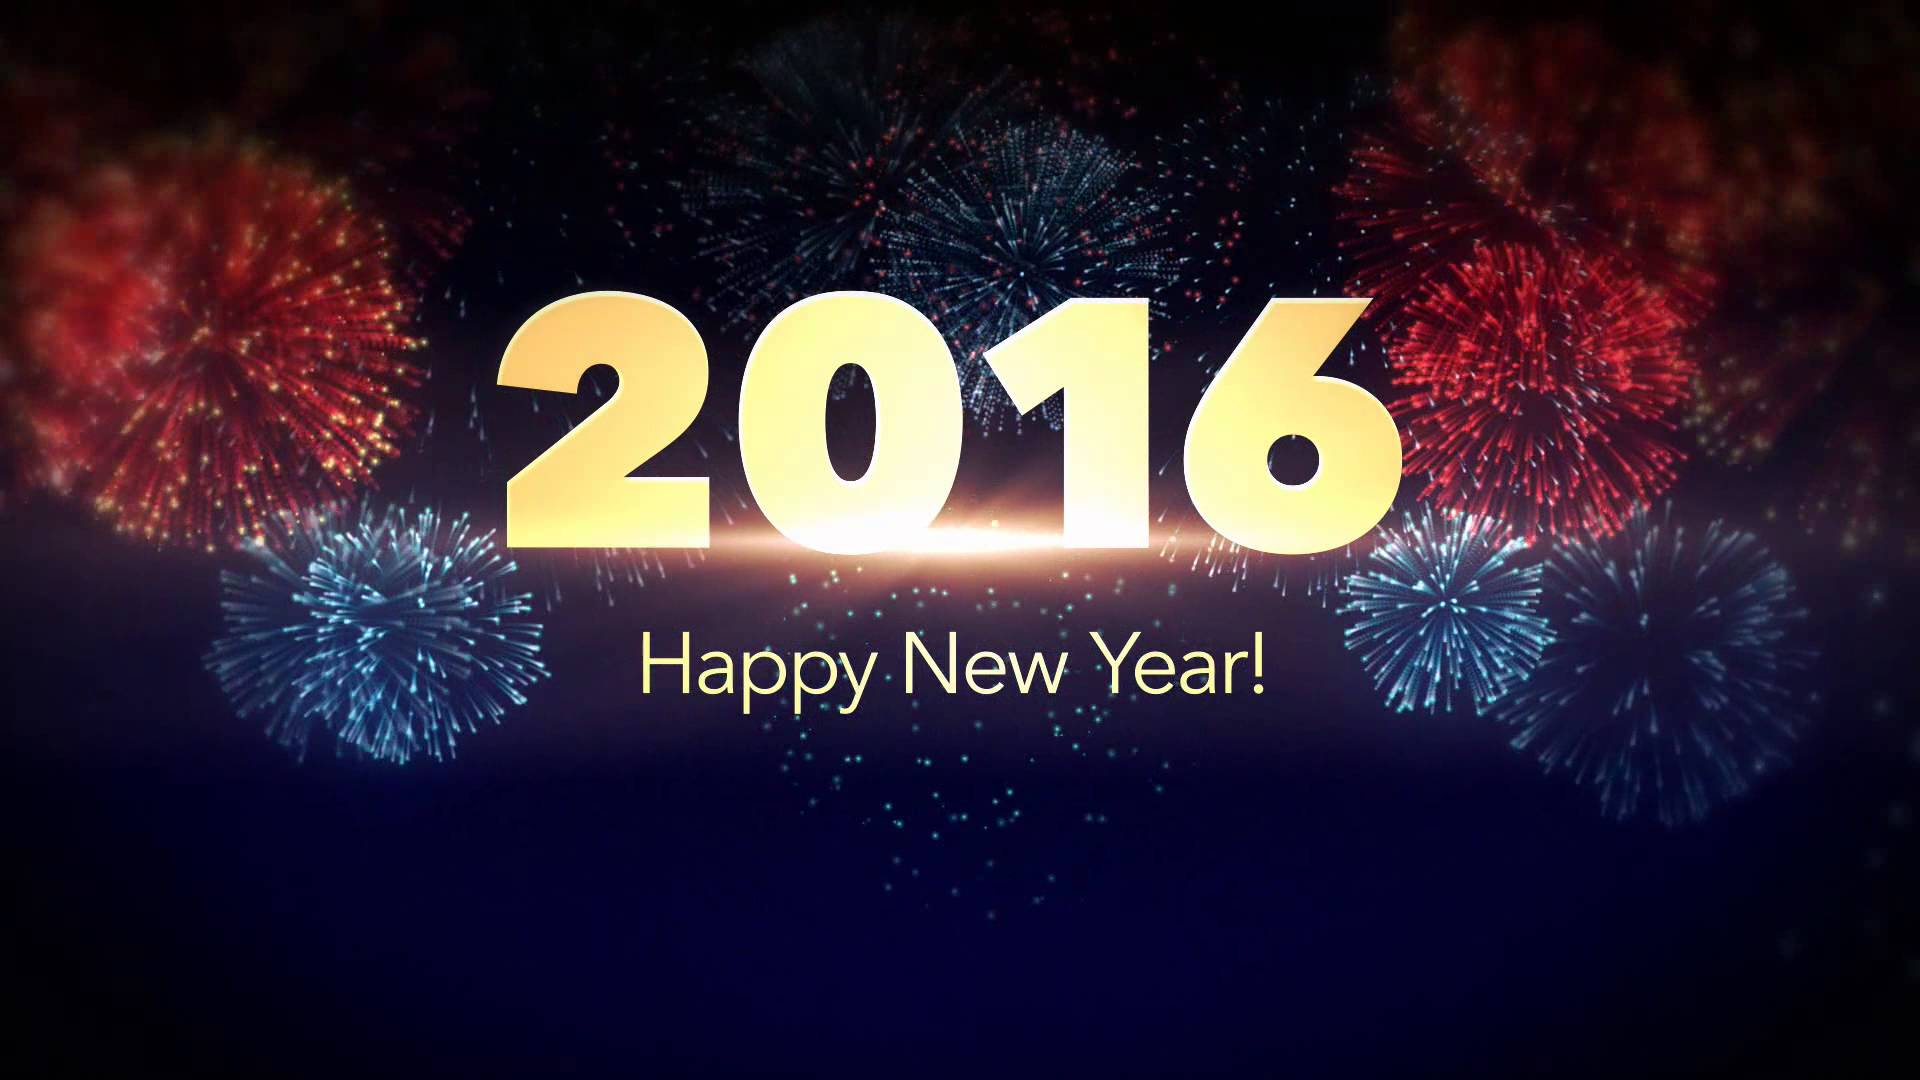 nuevo fondo de pantalla 2016 hd,texto,día de año nuevo,fuente,fuegos artificiales,evento